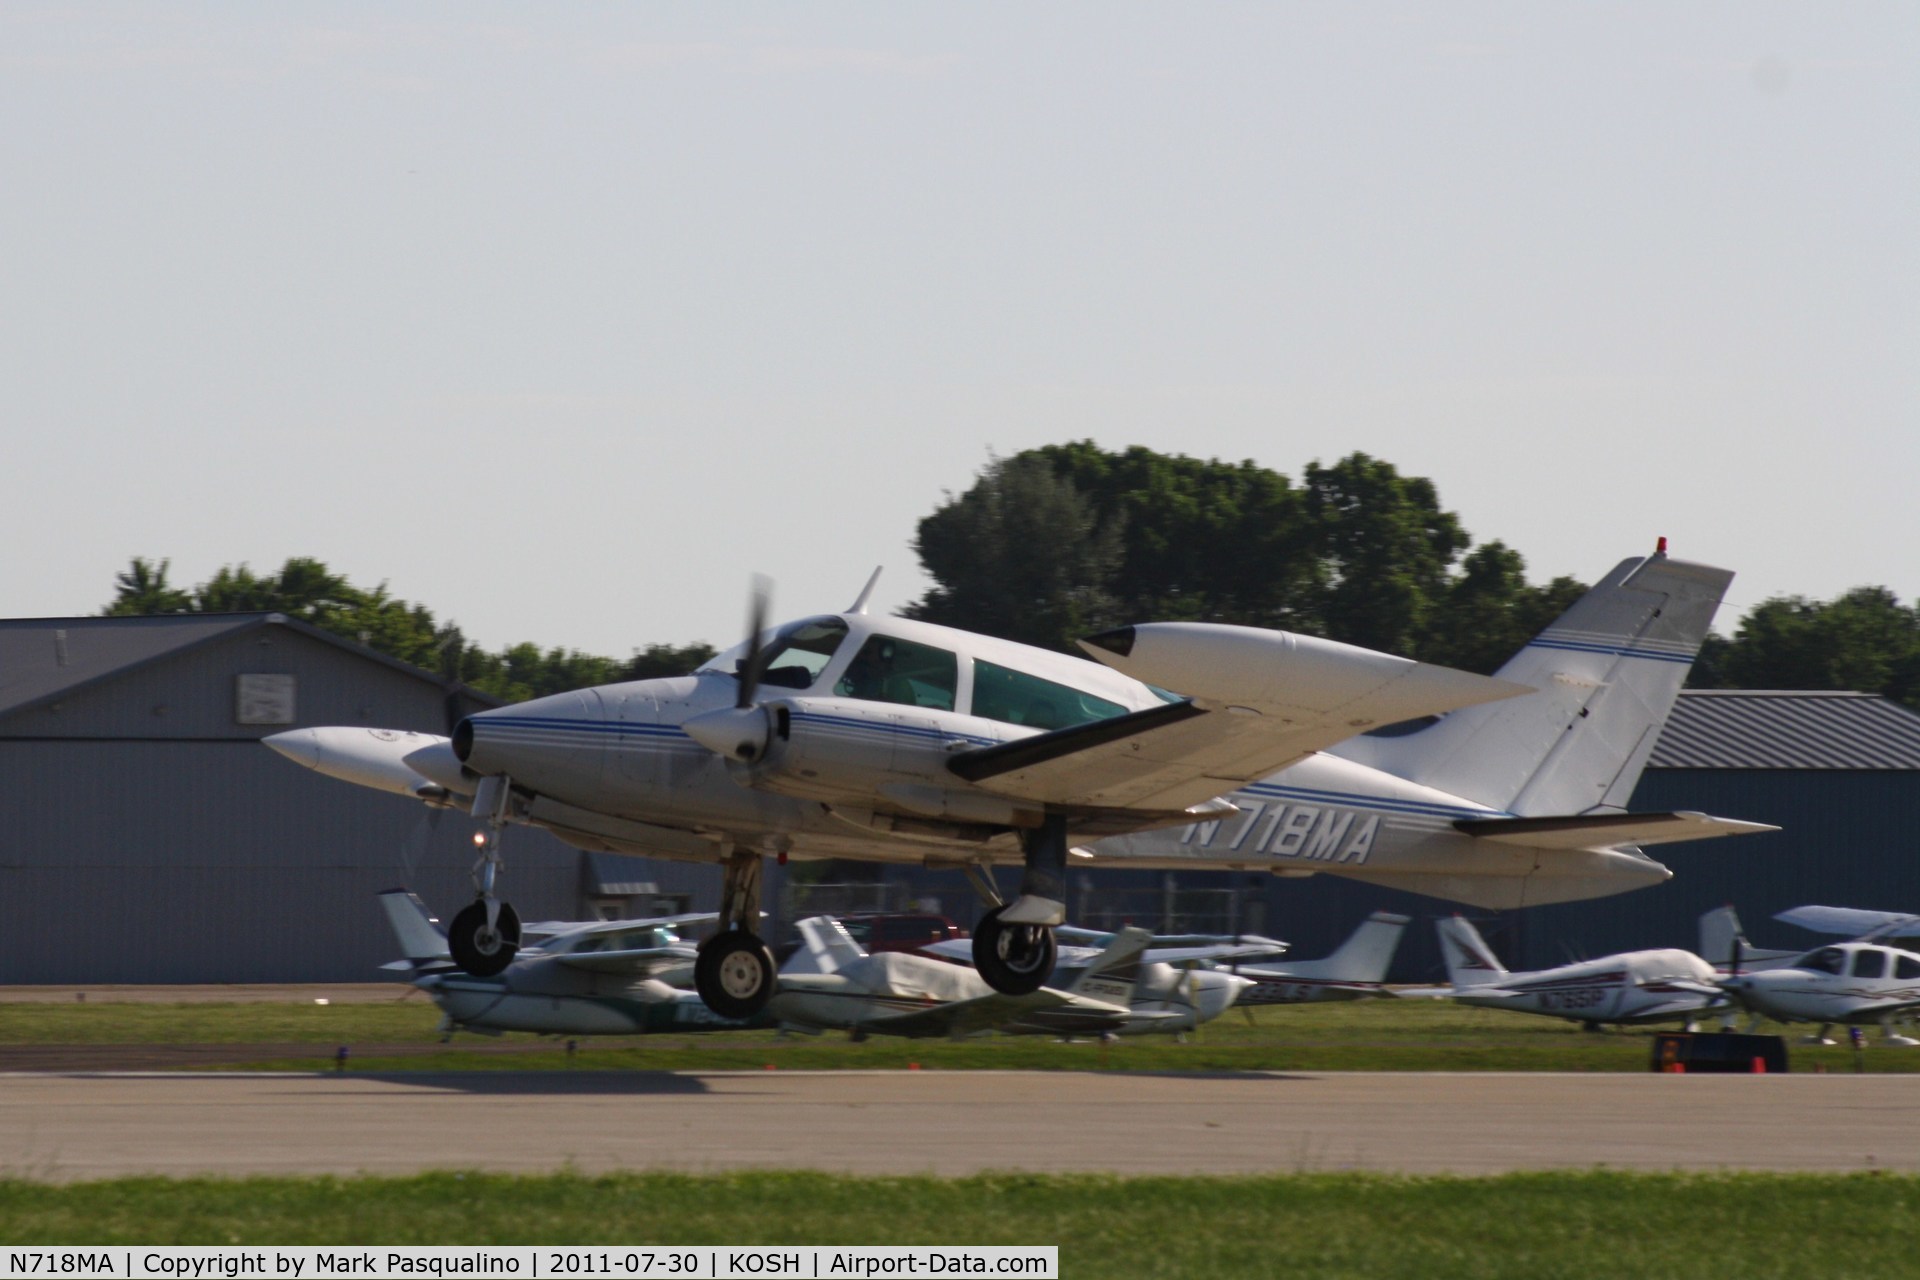 N718MA, 1974 Cessna 310Q C/N 310Q1153, Cessna 310Q